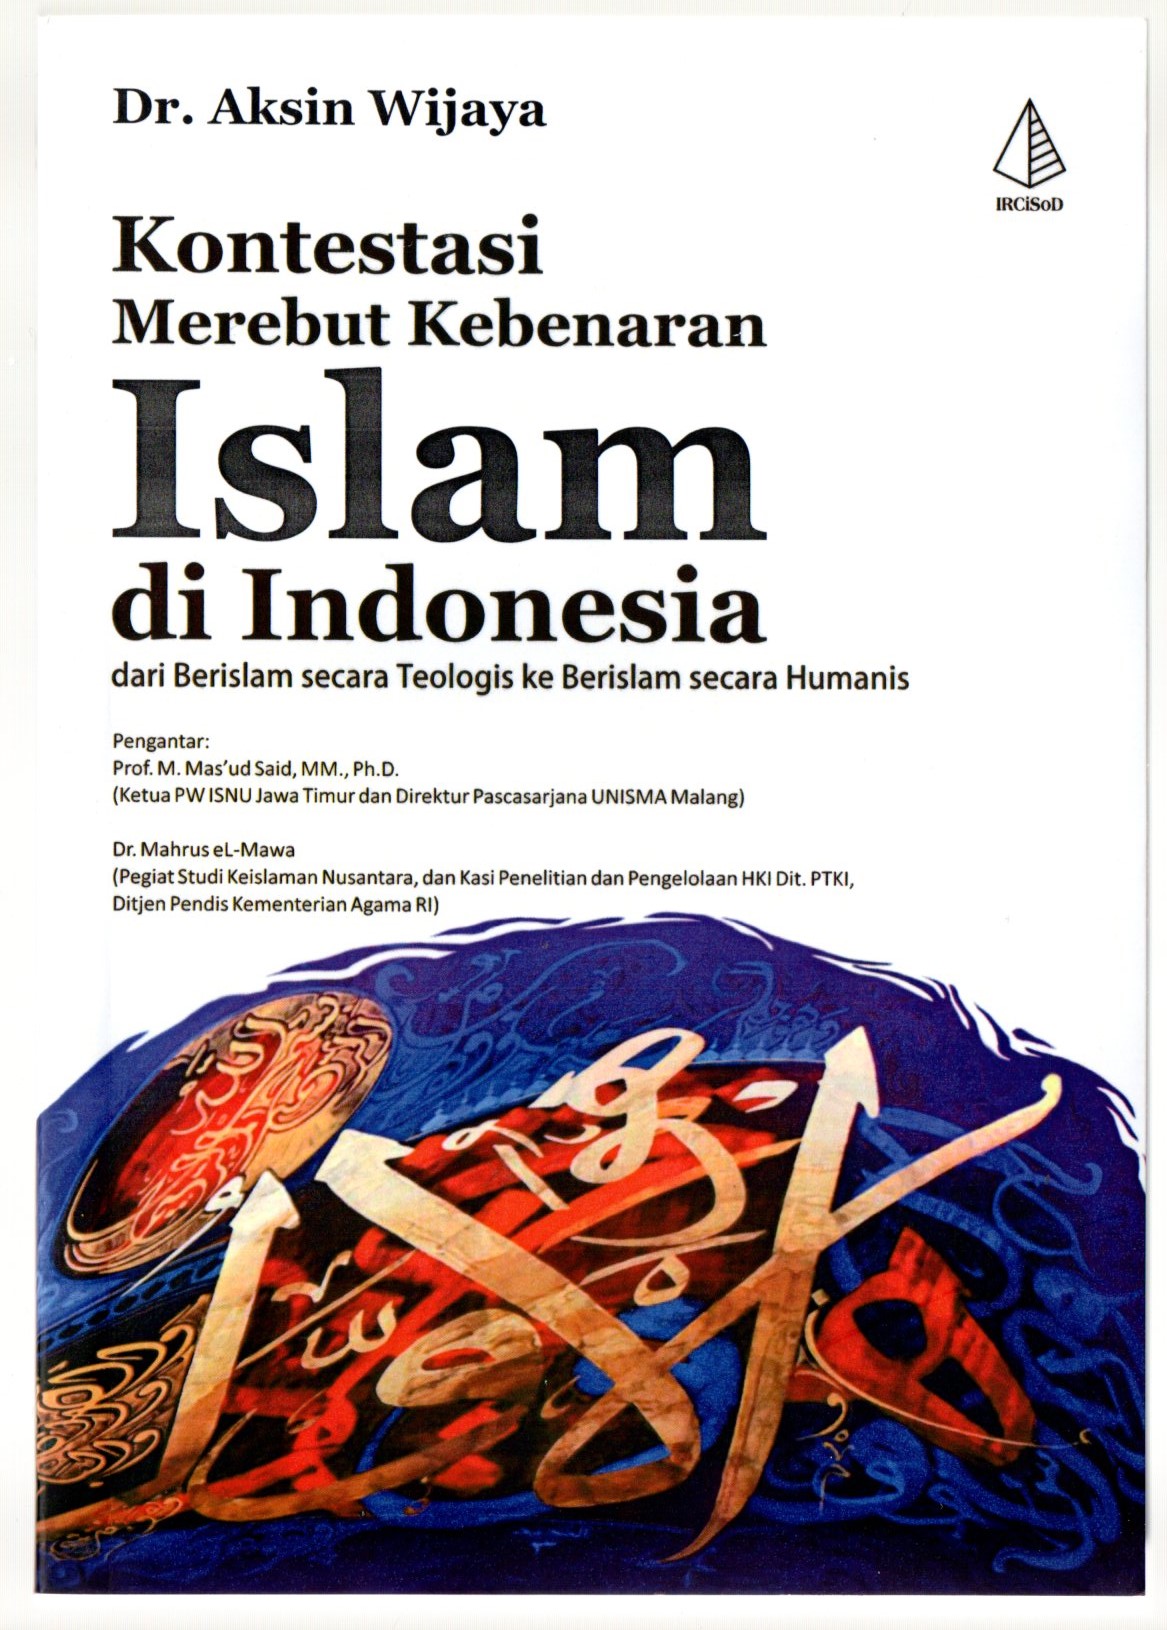 Kontestasi merebut kebenaran islam di indonesia